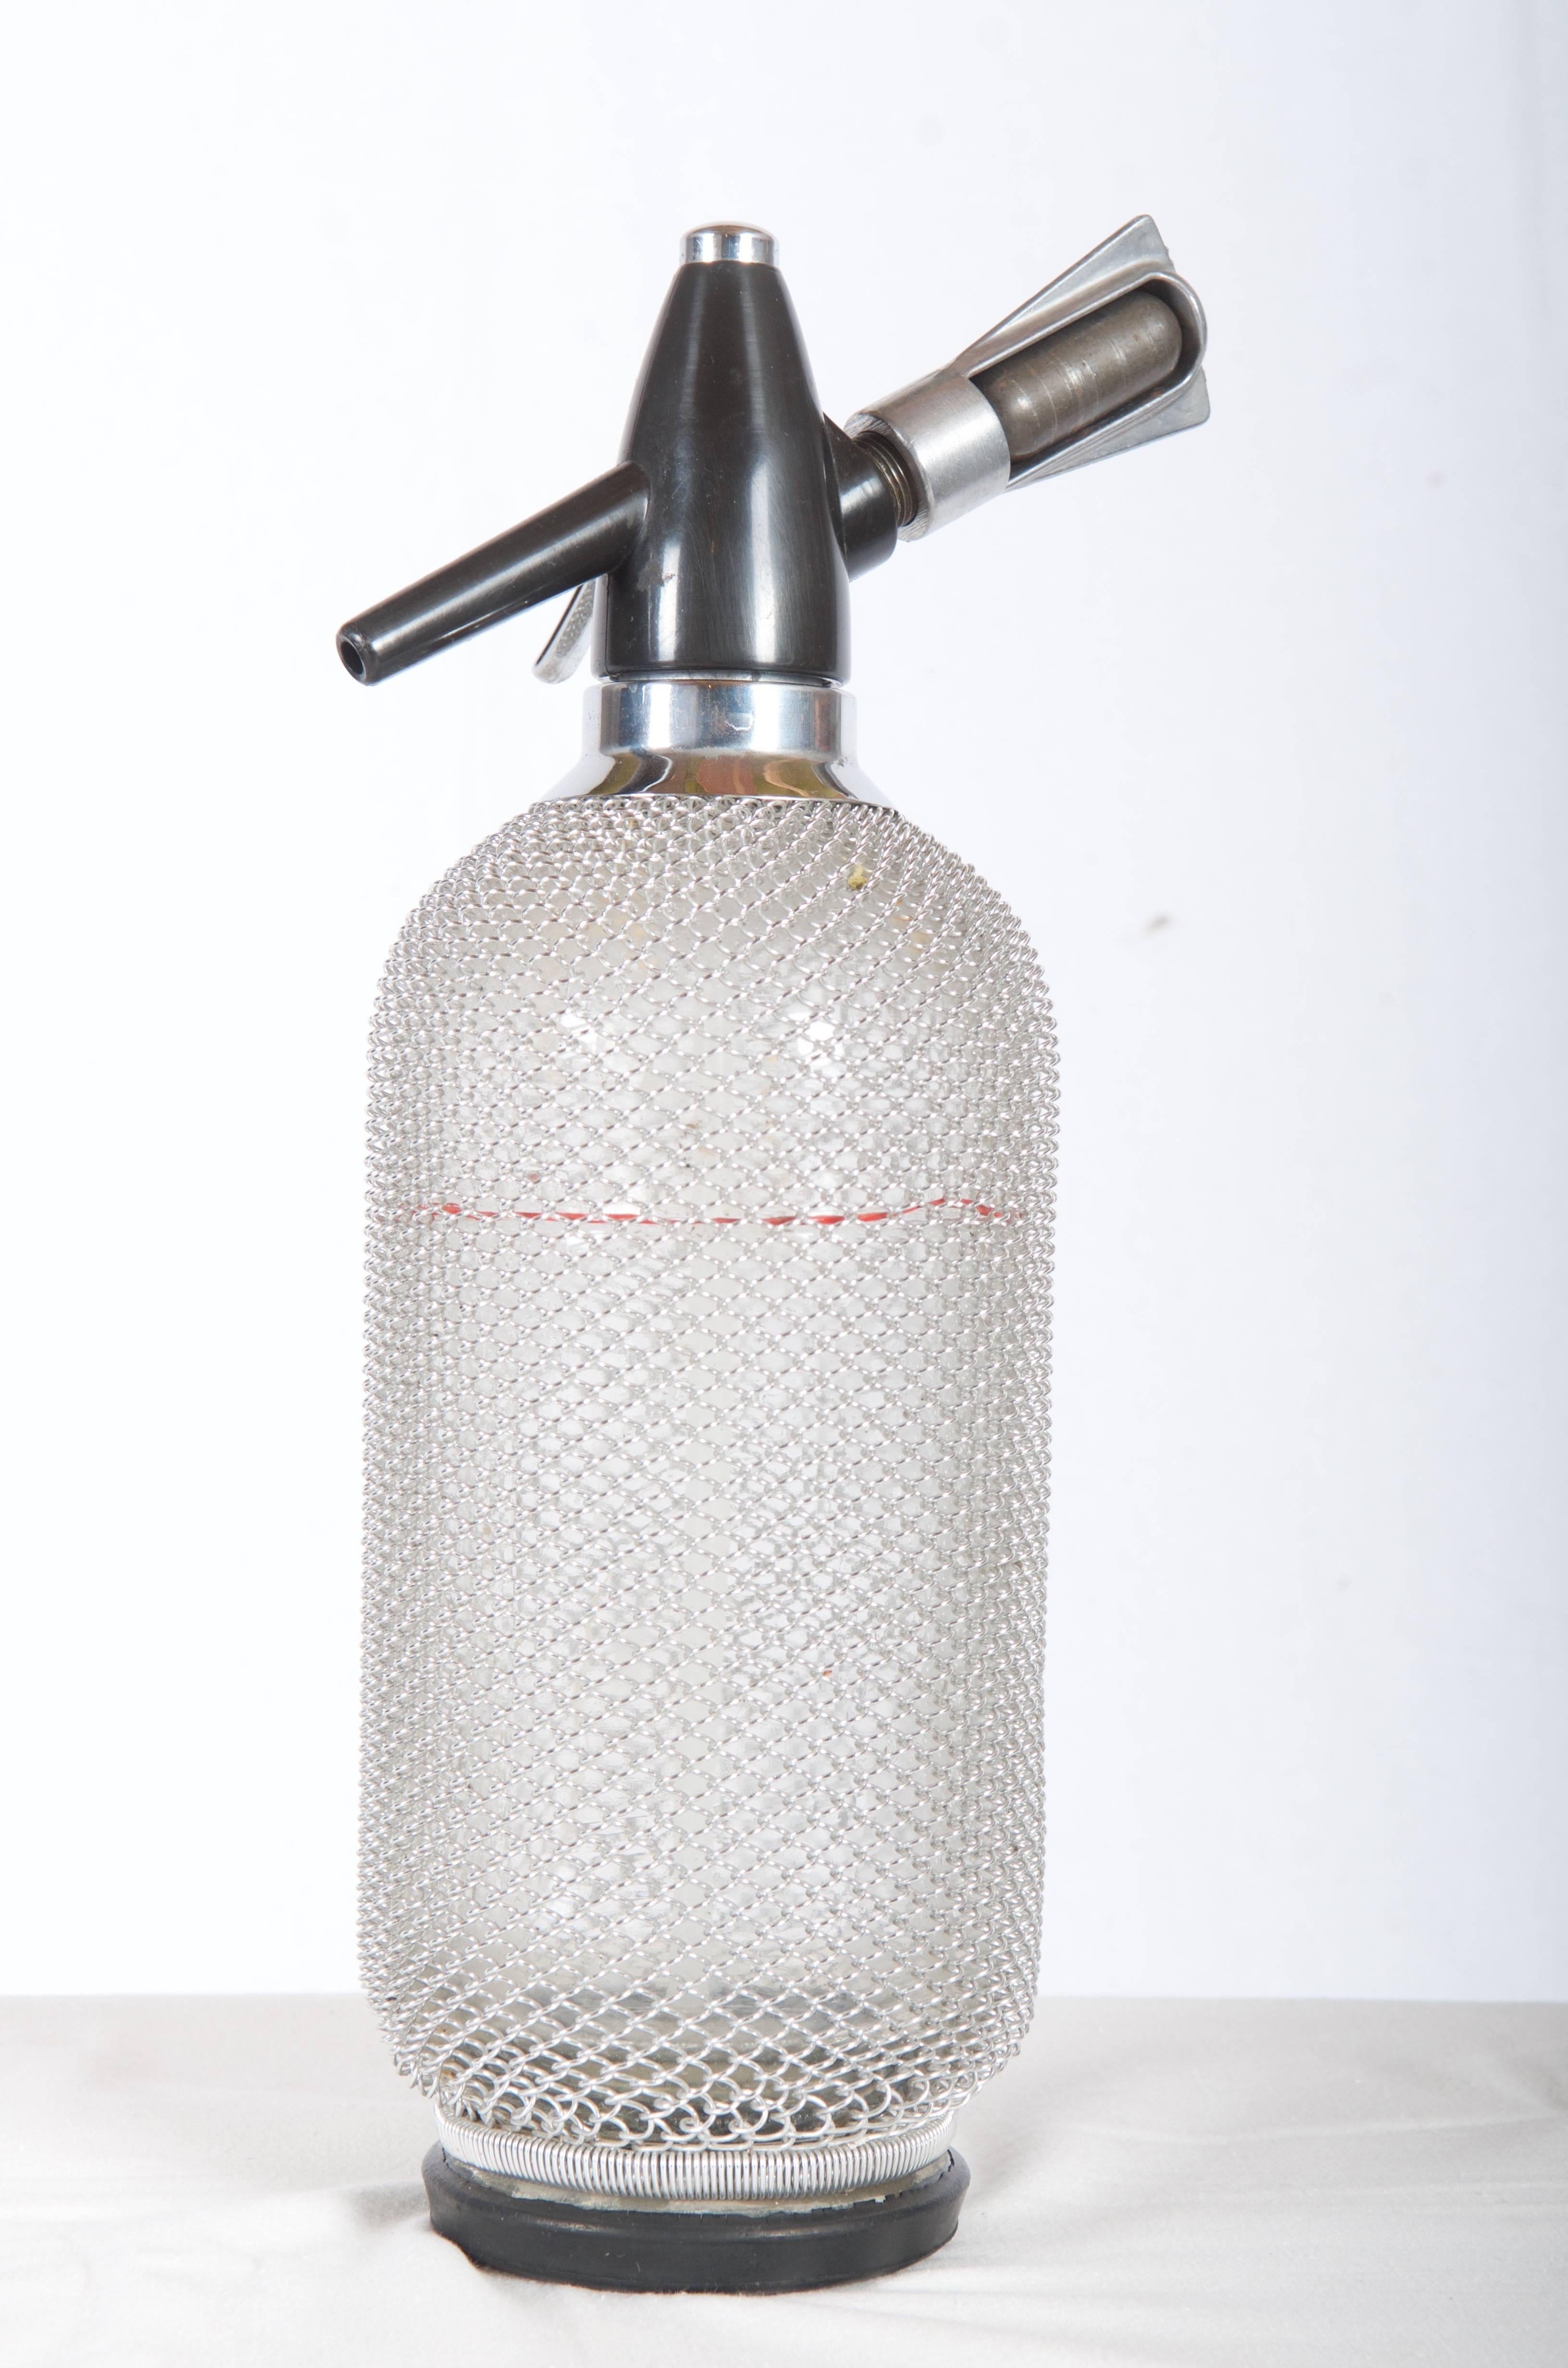 Seltene Vintage Glas Siphon Seltzer Soda Flasche  Mit Maschendraht aus dem Jahr 1970
Der Artikel befindet sich in einem einwandfreien Zustand.
Maße: 13 1/2 Zoll hoch und 4 Zoll Durchmesser auf der Basis